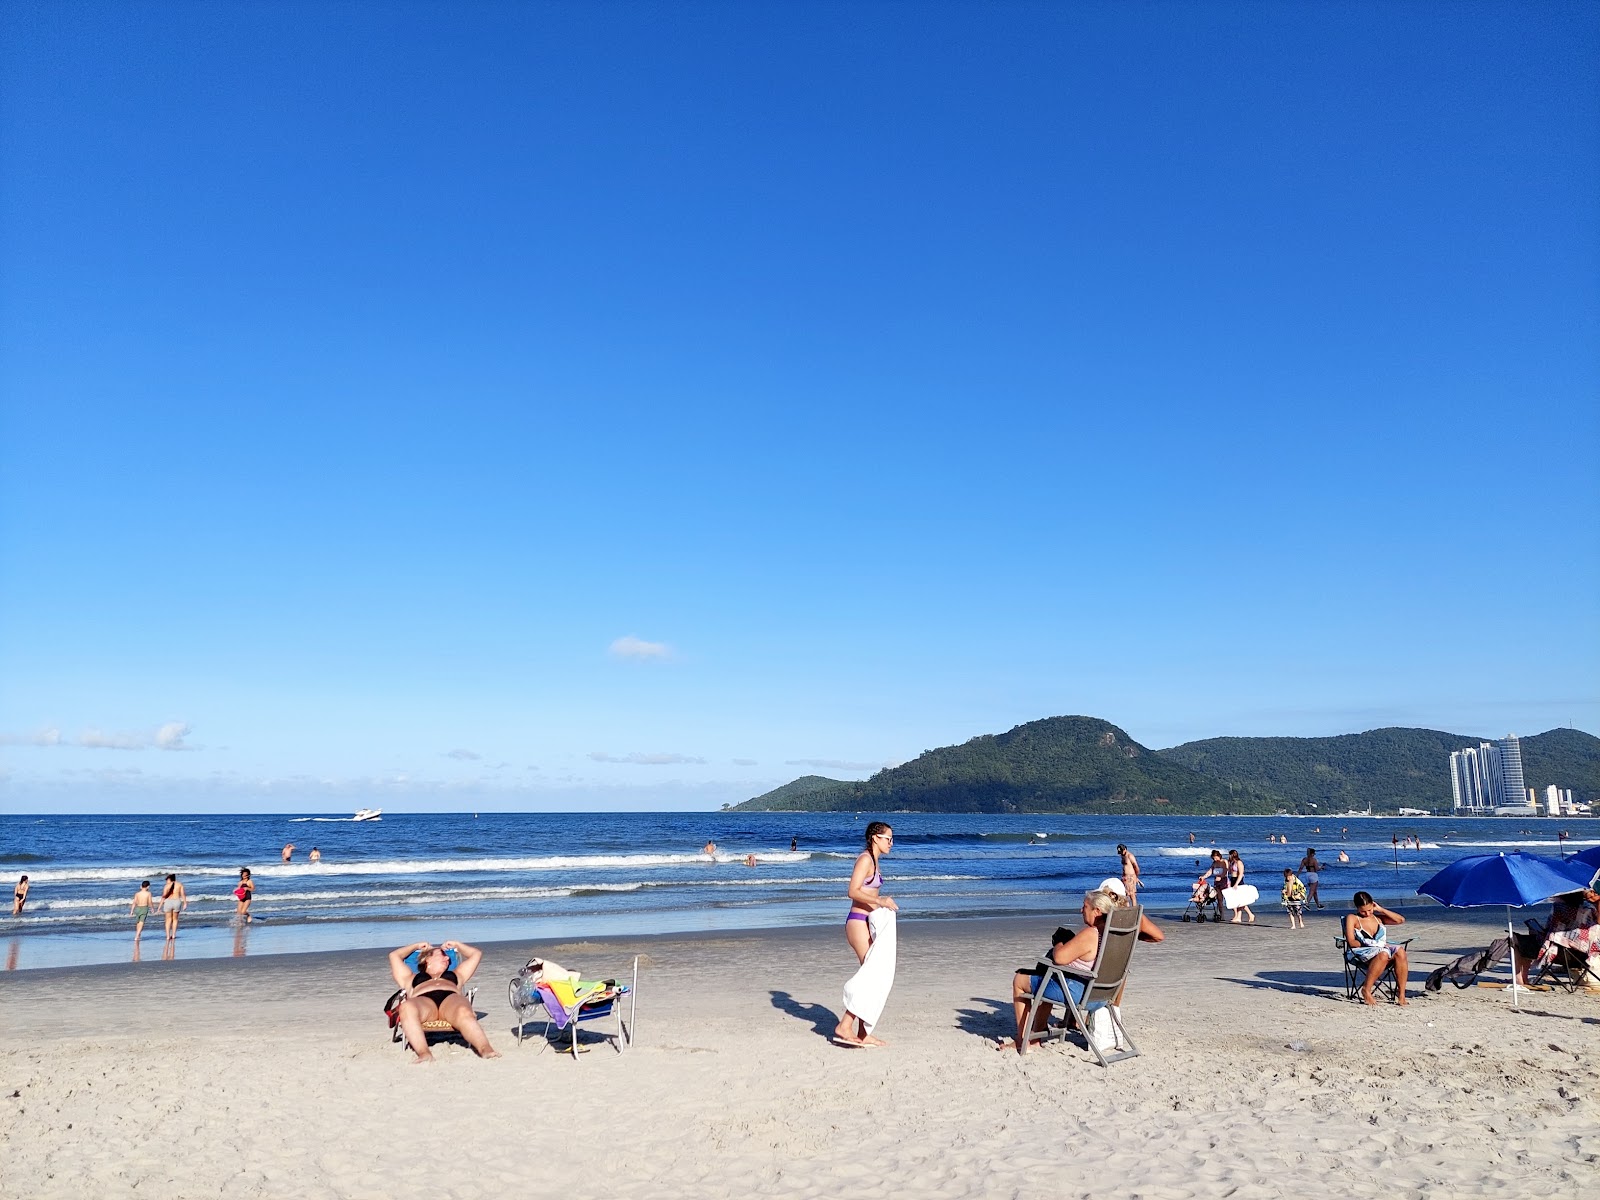 Praia de Camboriu'in fotoğrafı - rahatlamayı sevenler arasında popüler bir yer